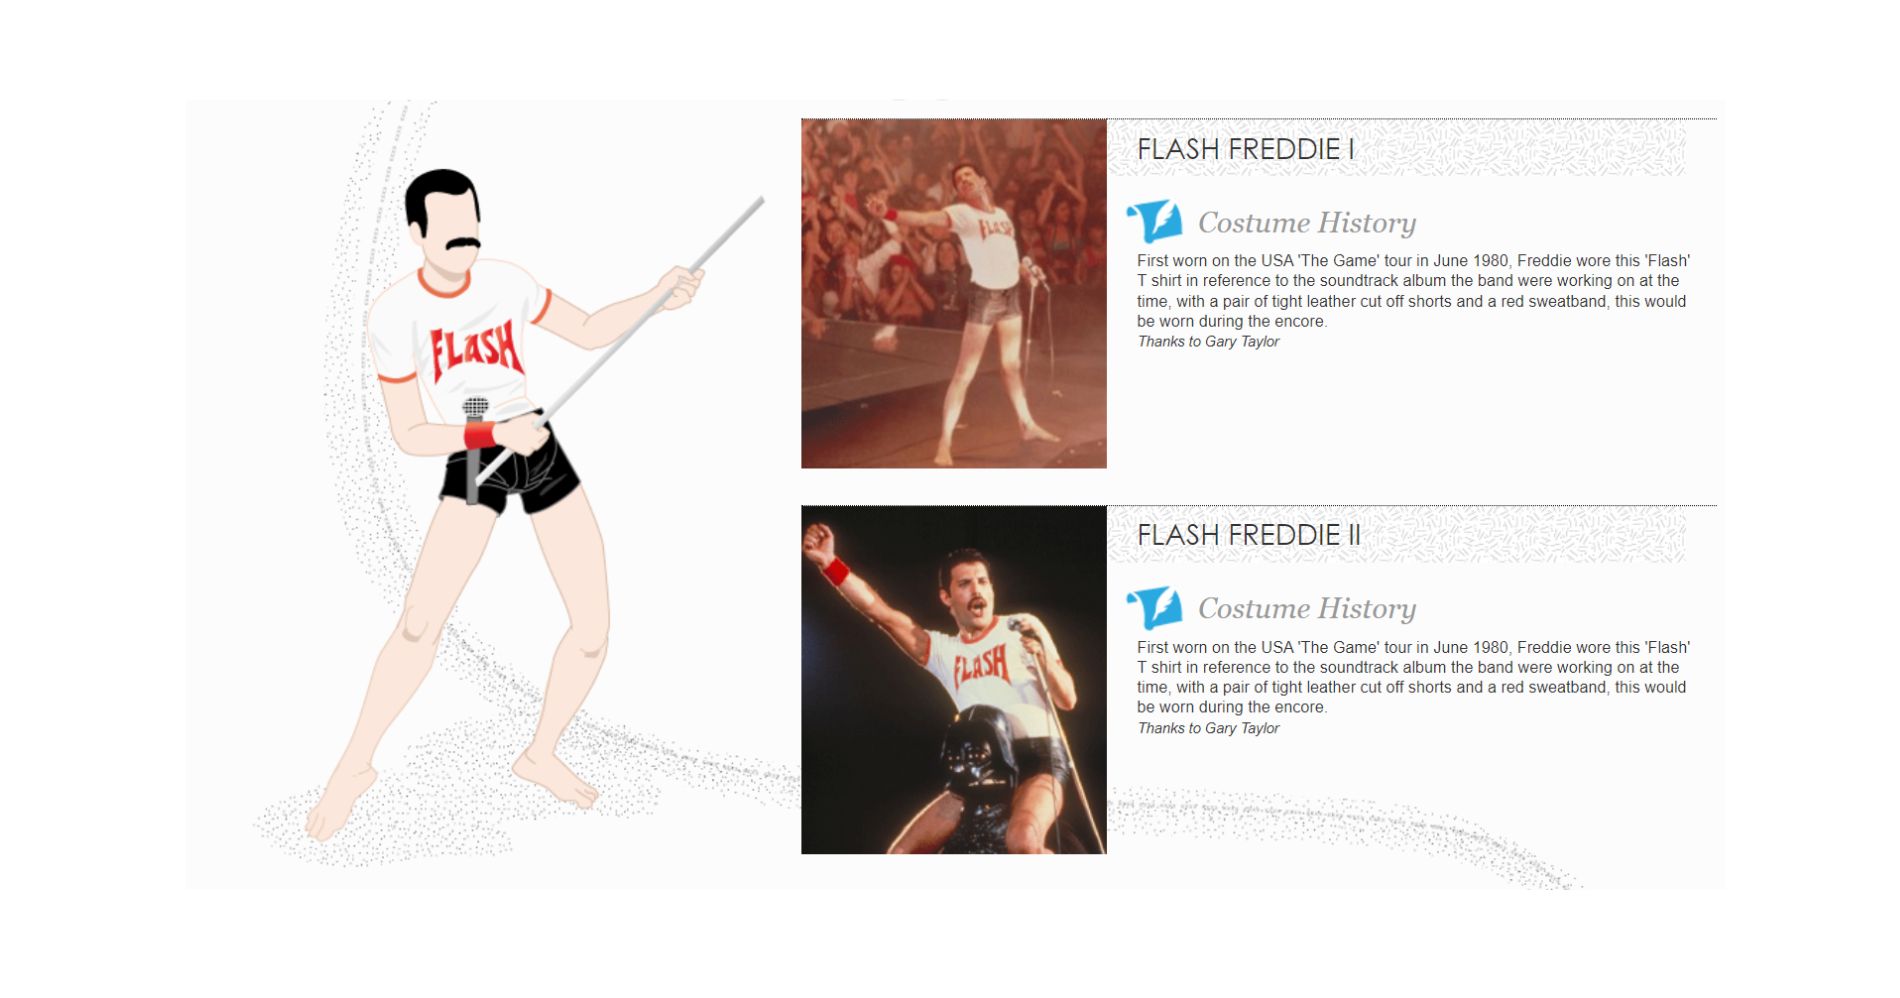 Sejarah Kaos Flash Freddie Mercury - Image: